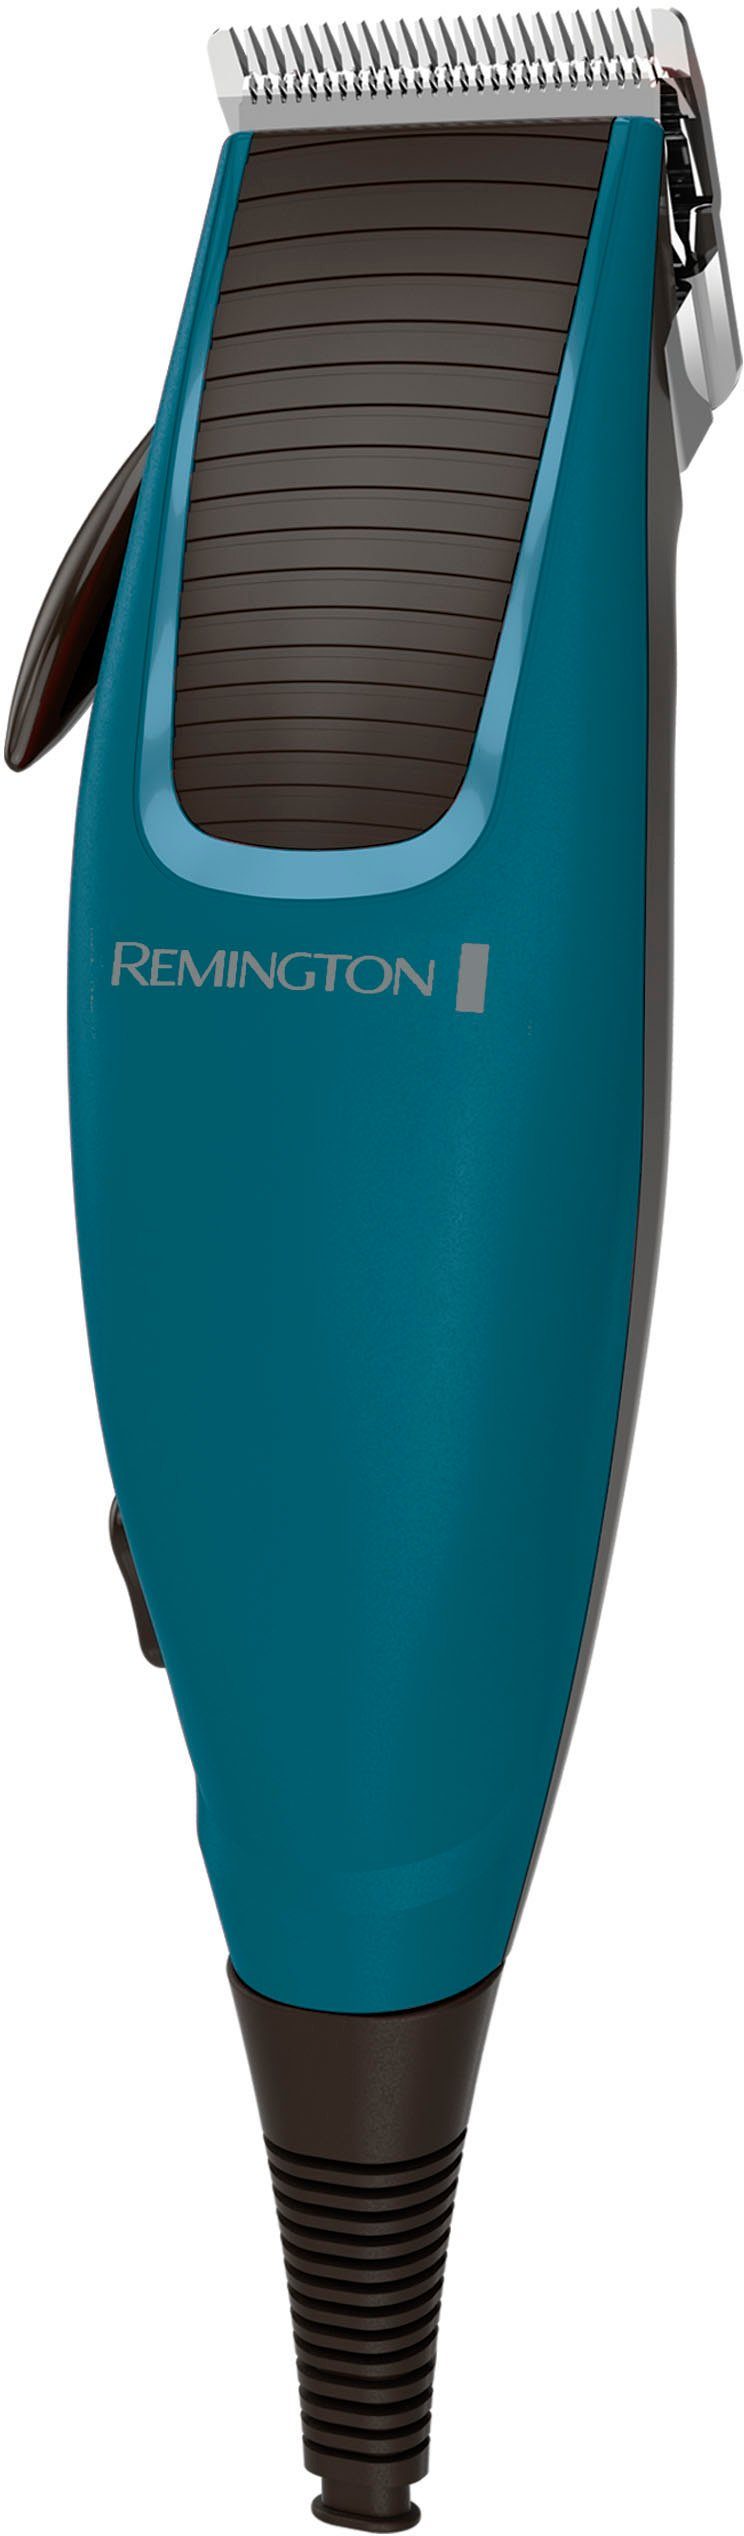 Remington HC5020, Haarschneider viel mit Apprentice Zubehör